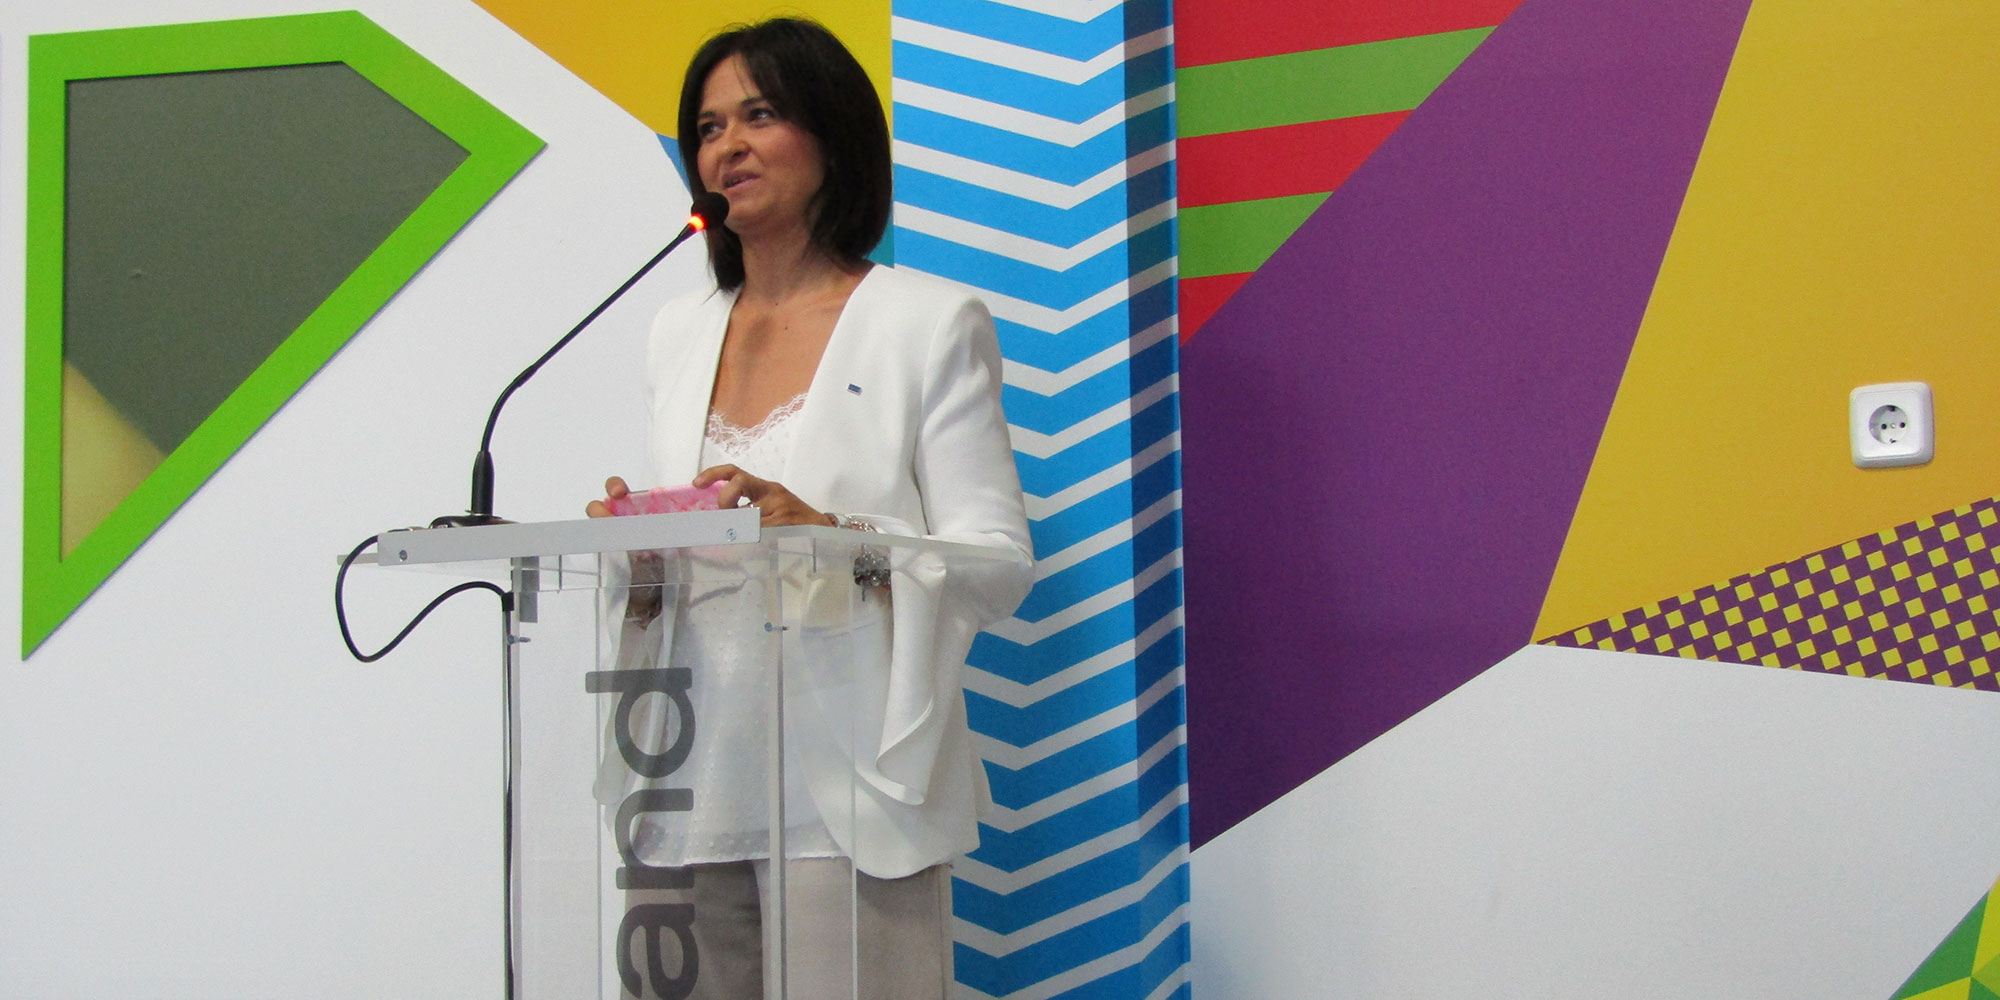 Stefania Cimino, presidenta y CEO de Roland DG South Europe, fue la encargada de abrir la jornada y dar paso a las diferentes intervenciones...